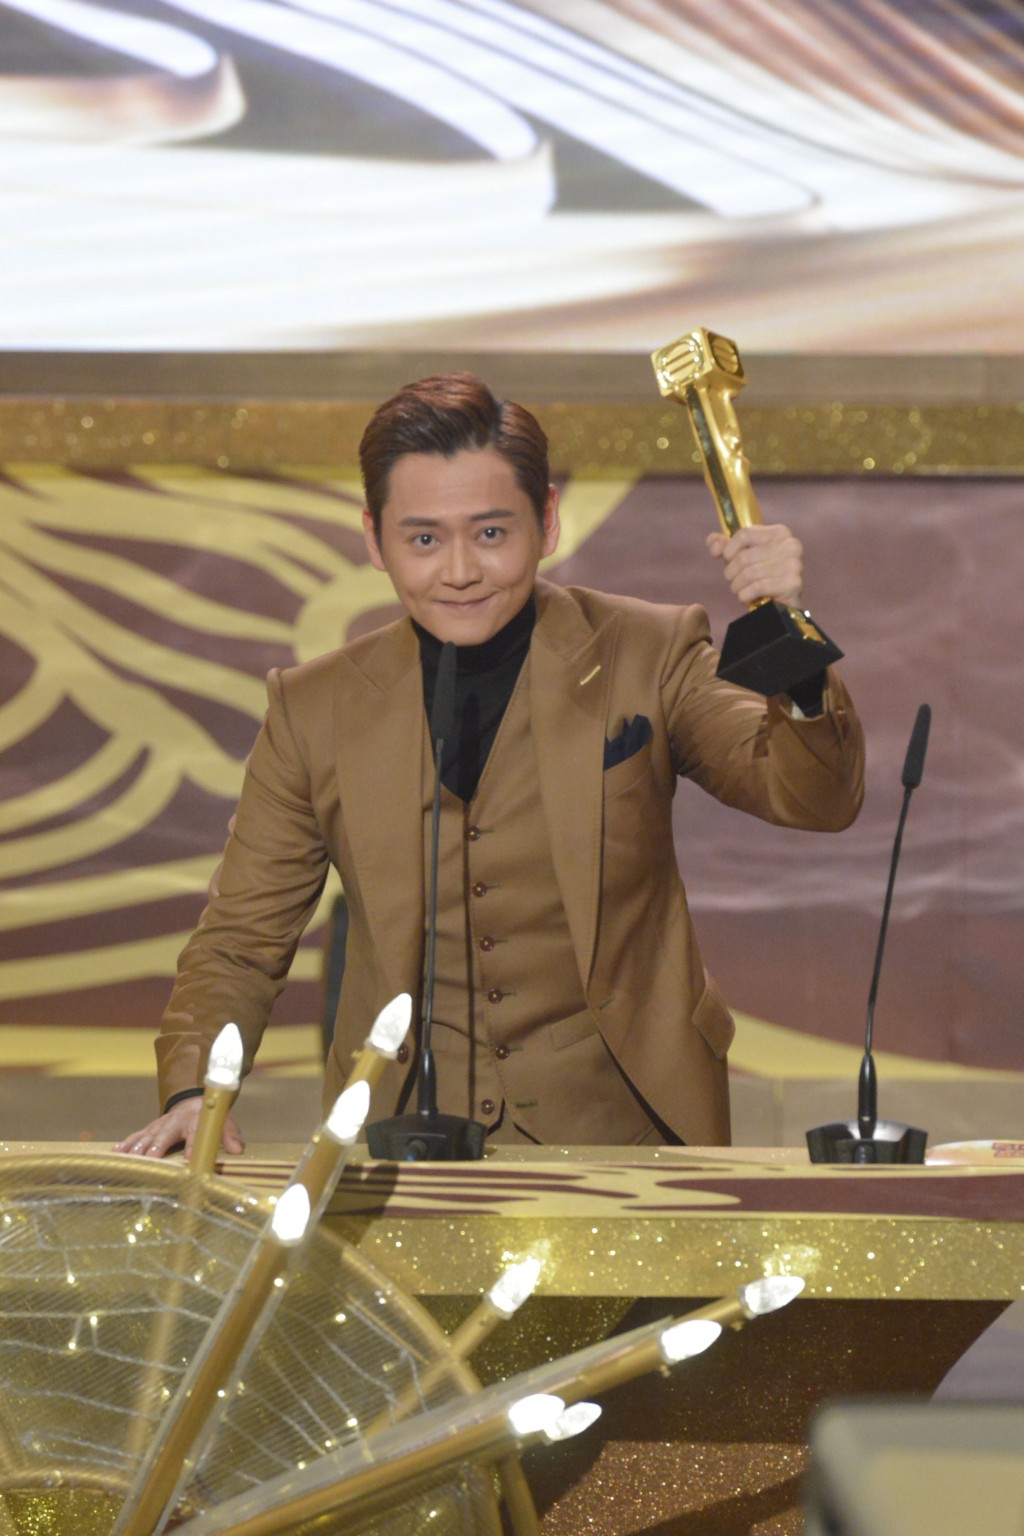 張振朗奪得《萬千星輝頒獎典禮2019》「飛躍進步男藝員」。